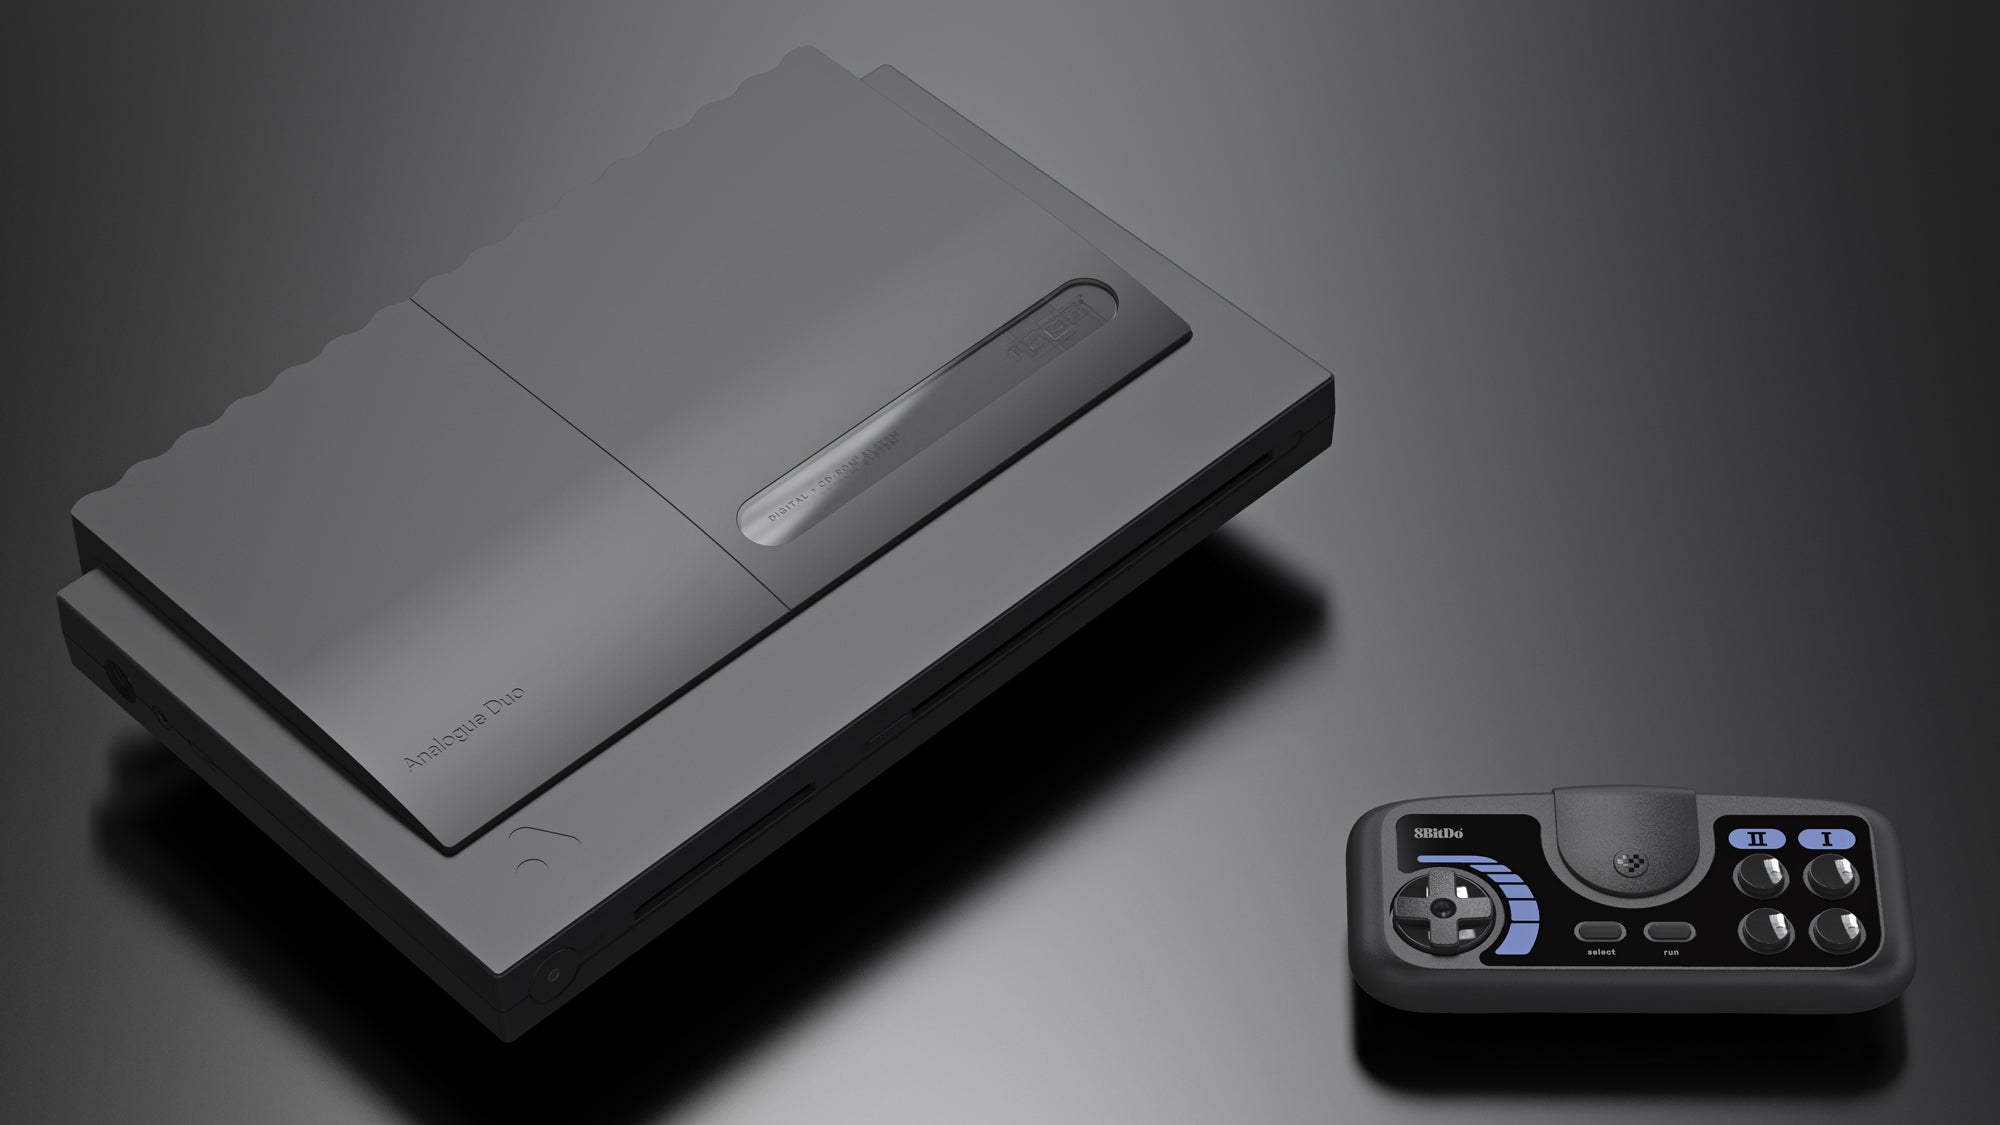 وحدة التحكم التناظرية الثنائية ذات اللون الأسود بجانب لوحة الألعاب اللاسلكية 8BitDo.